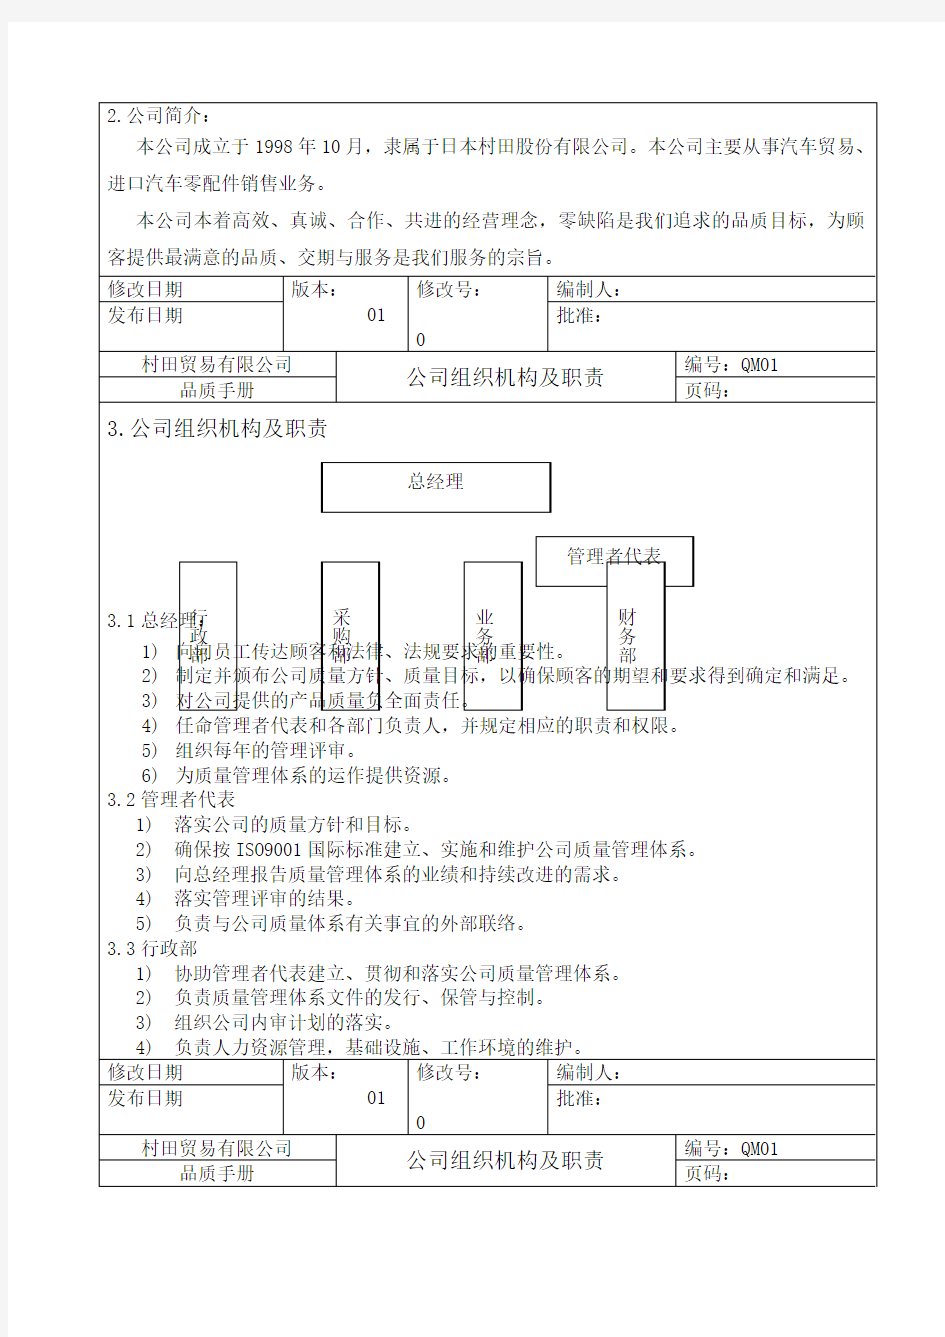 村田贸易公司品质手册 